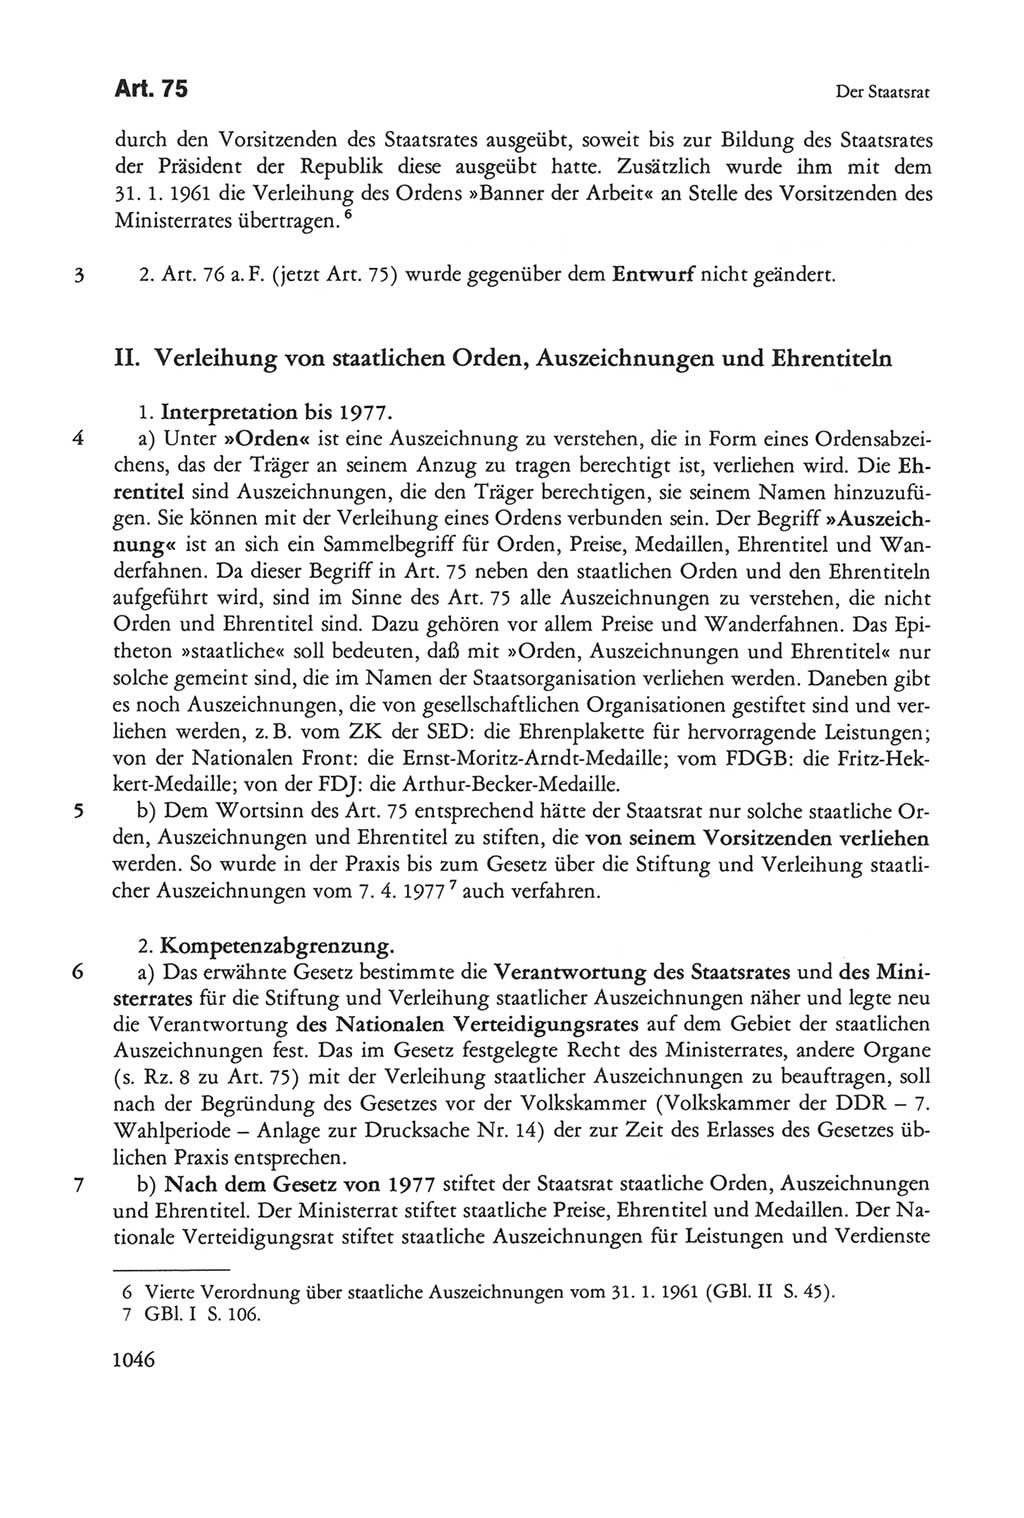 Die sozialistische Verfassung der Deutschen Demokratischen Republik (DDR), Kommentar mit einem Nachtrag 1997, Seite 1046 (Soz. Verf. DDR Komm. Nachtr. 1997, S. 1046)